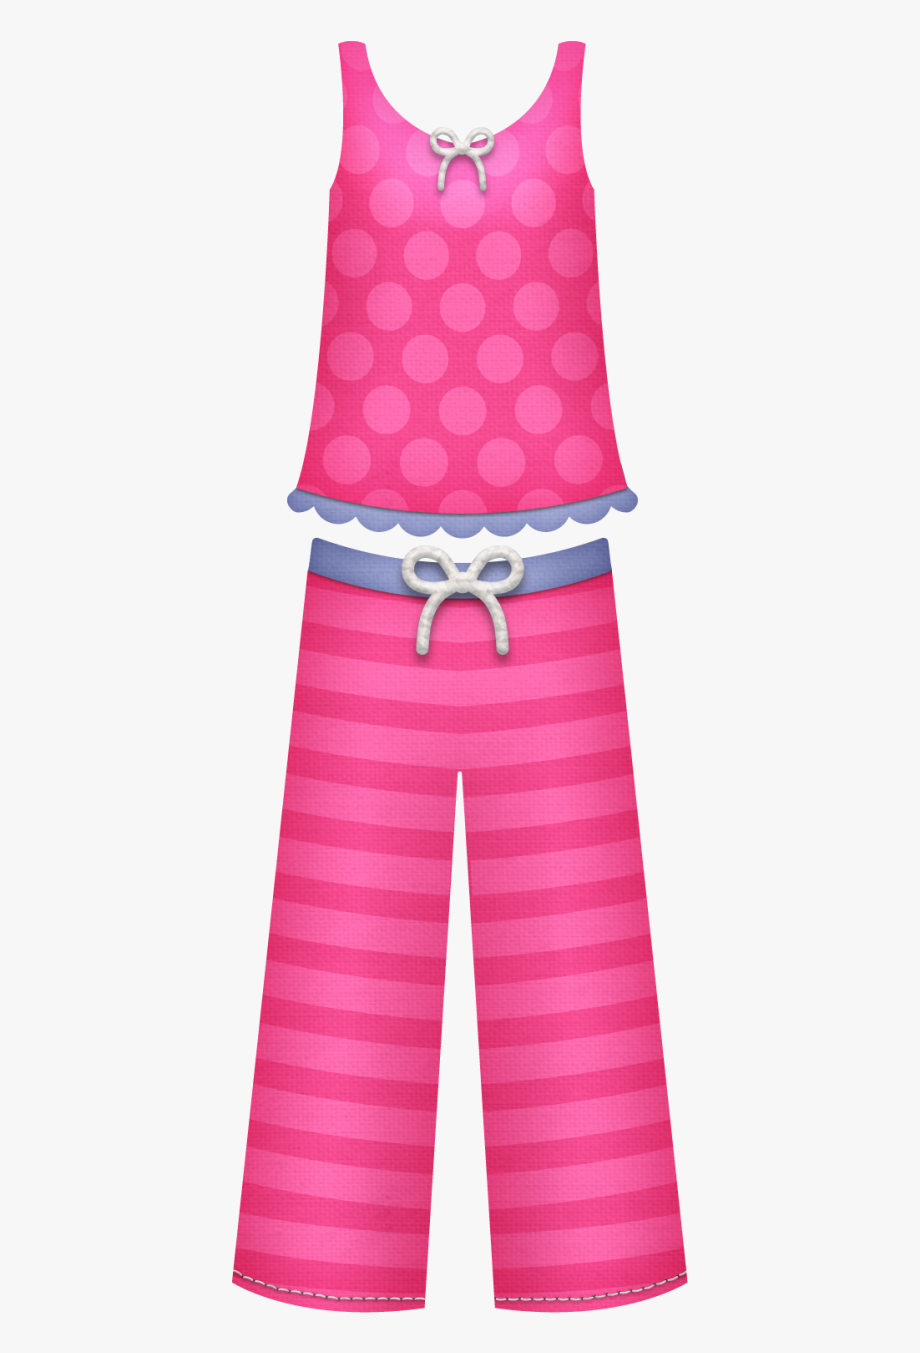 pajama clipart pink pajamas